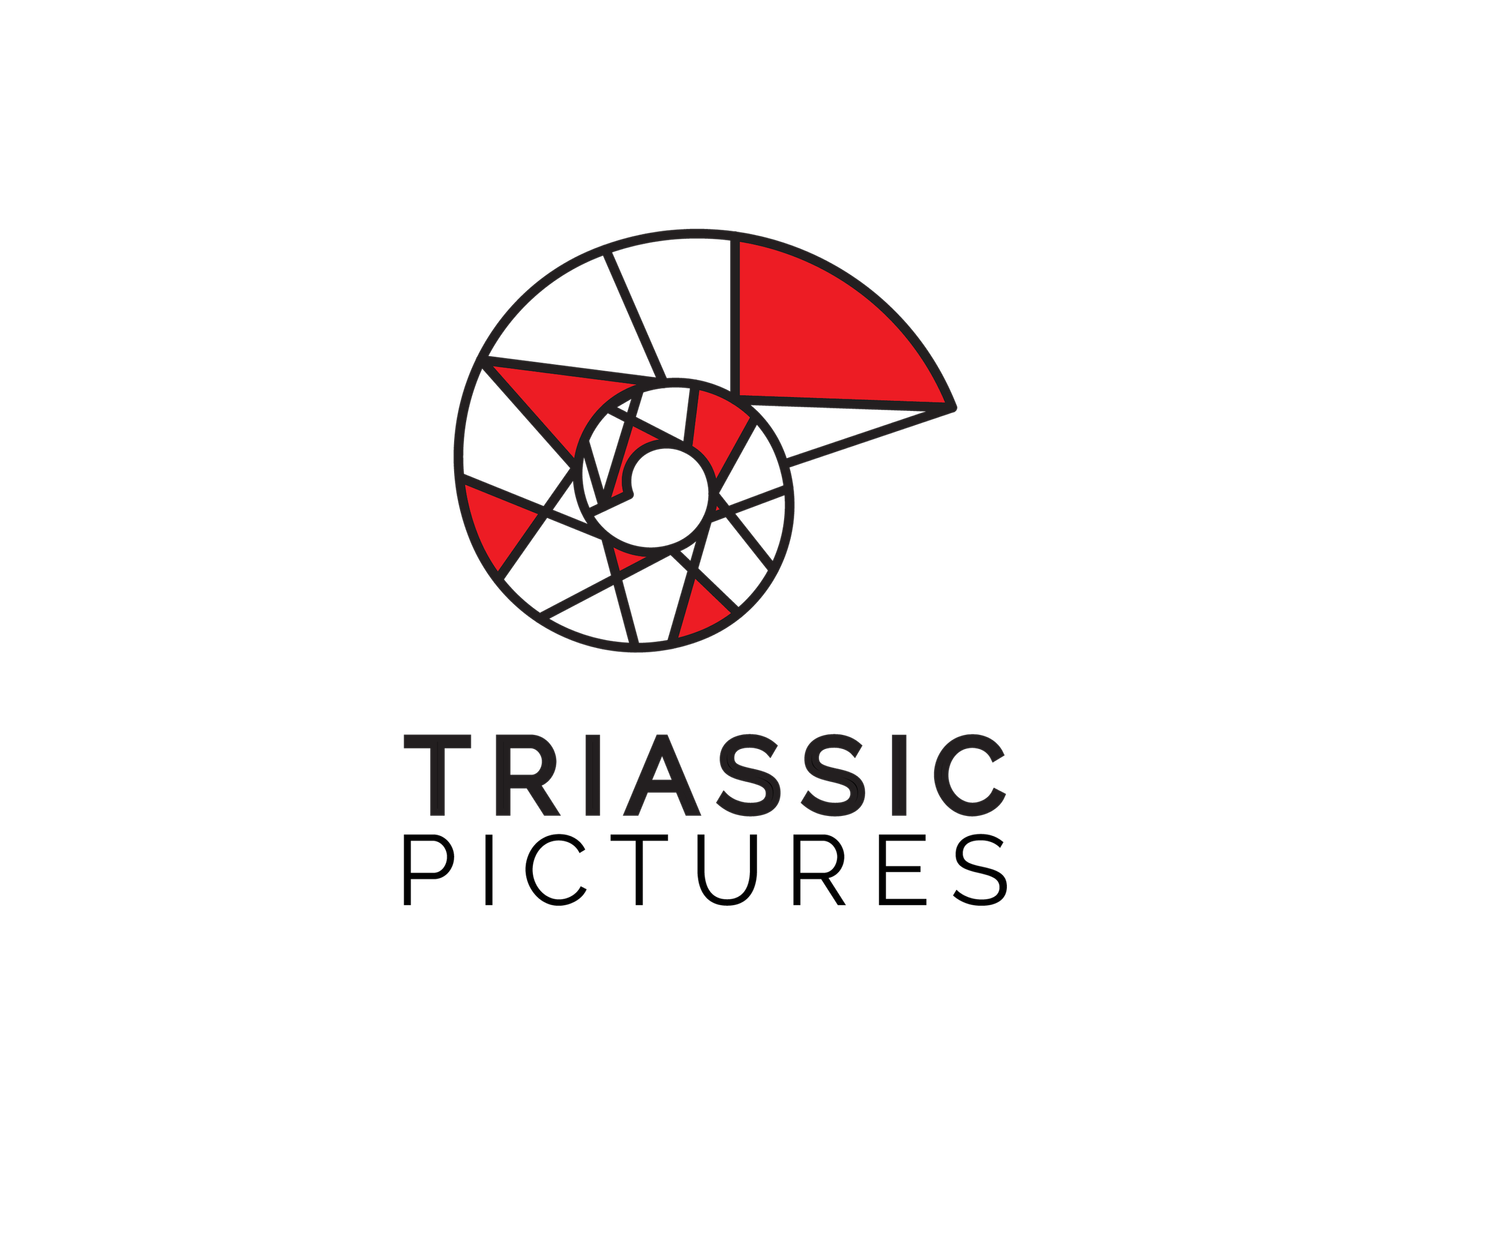 Triassic Pictures